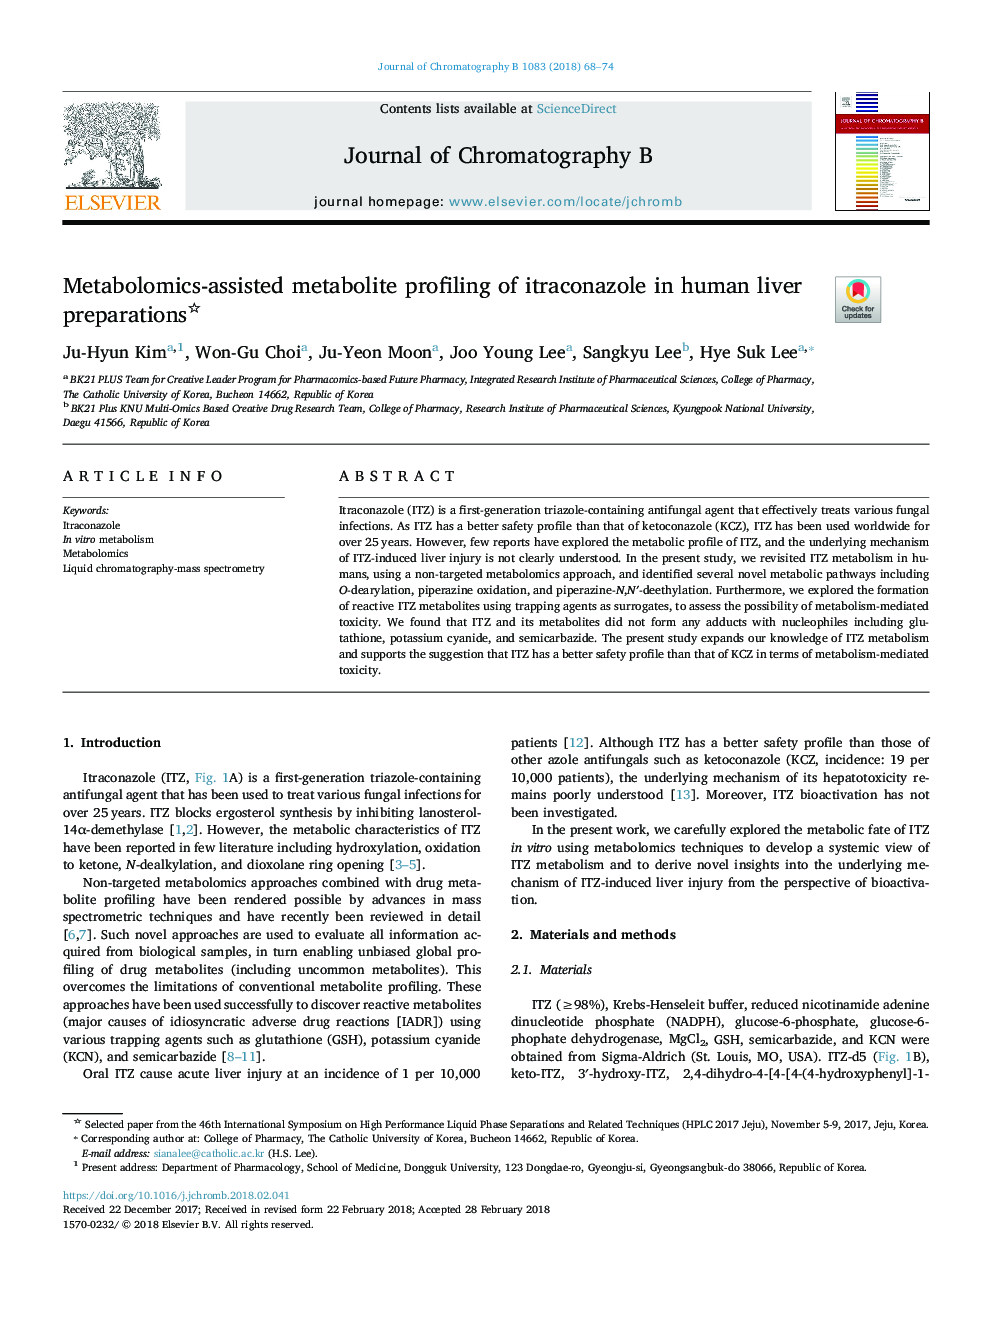 تشخیص متابولیت متابولیتی آنتیکونازول در آماده سازی کبد انسان 